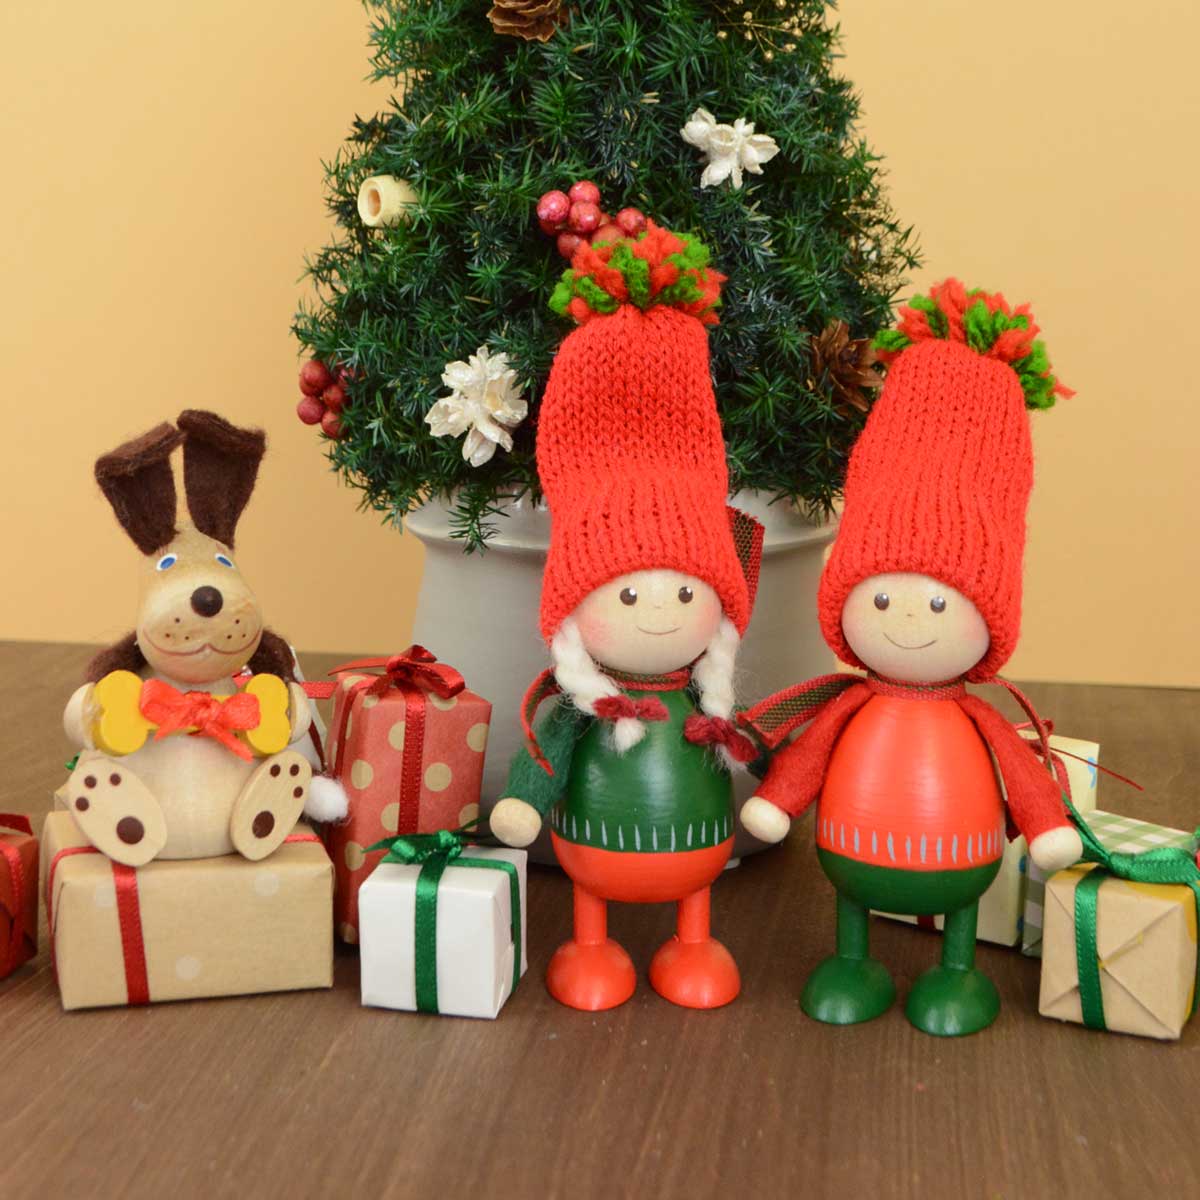 【予約】【2023新作】NORDIKA nisse ノルディカ ニッセ クリスマス 木製人形 ( 赤いセーターのふとっちょ男の子 / ツインズ )